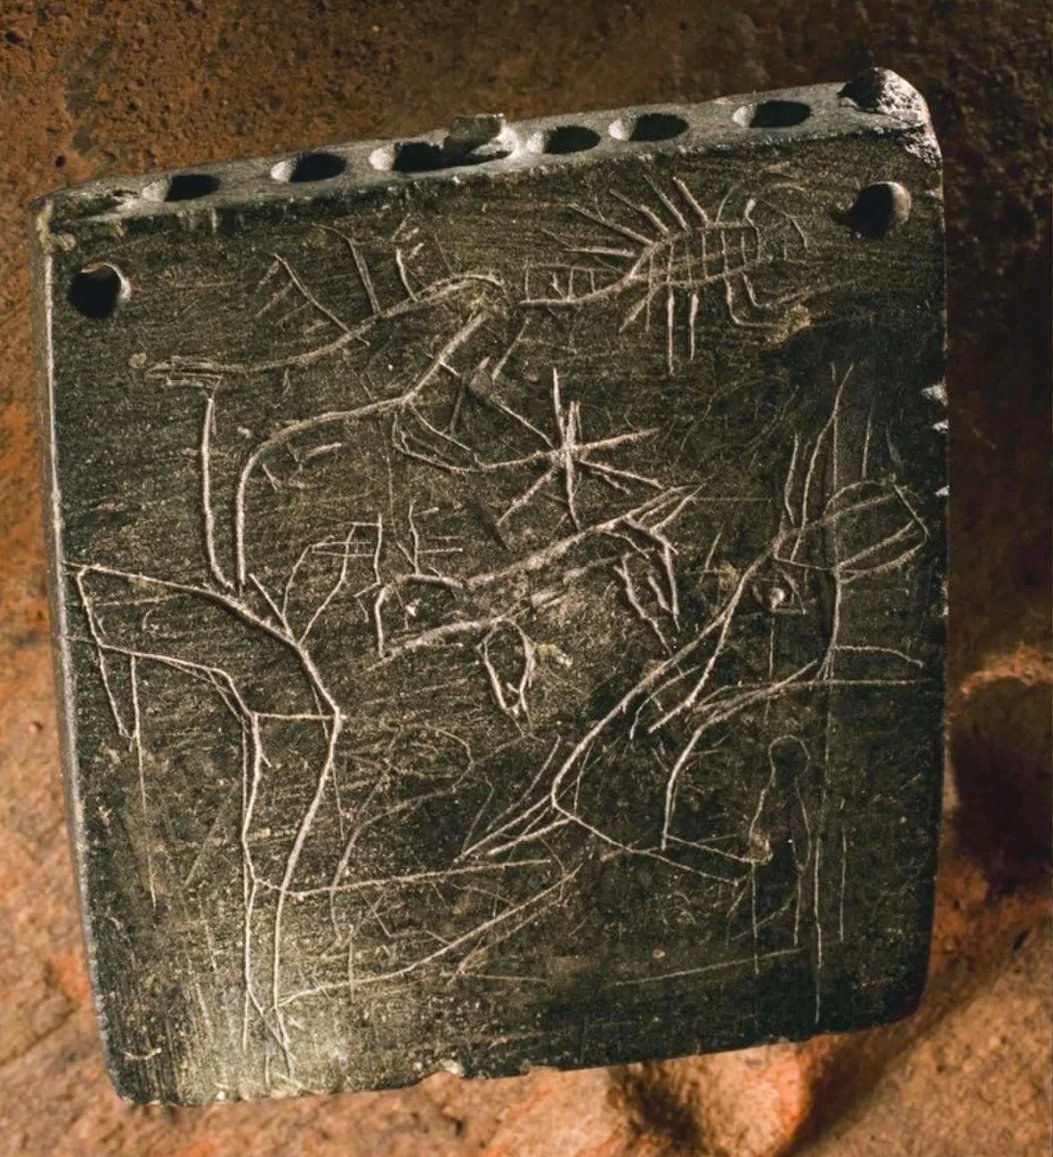 古代咒语的正面和背面都有蝎子等动物的插图（如图所示）。 对咒语文字的分析表明，它是在公元前 850 年至公元前 800 年之间的某个时间被铭刻的，这使得铭文成为迄今为止发现的最古老的亚拉姆语咒语。 © Roberto Ceccacci 摄/芝加哥-图宾根 Zincirli 远征队提供